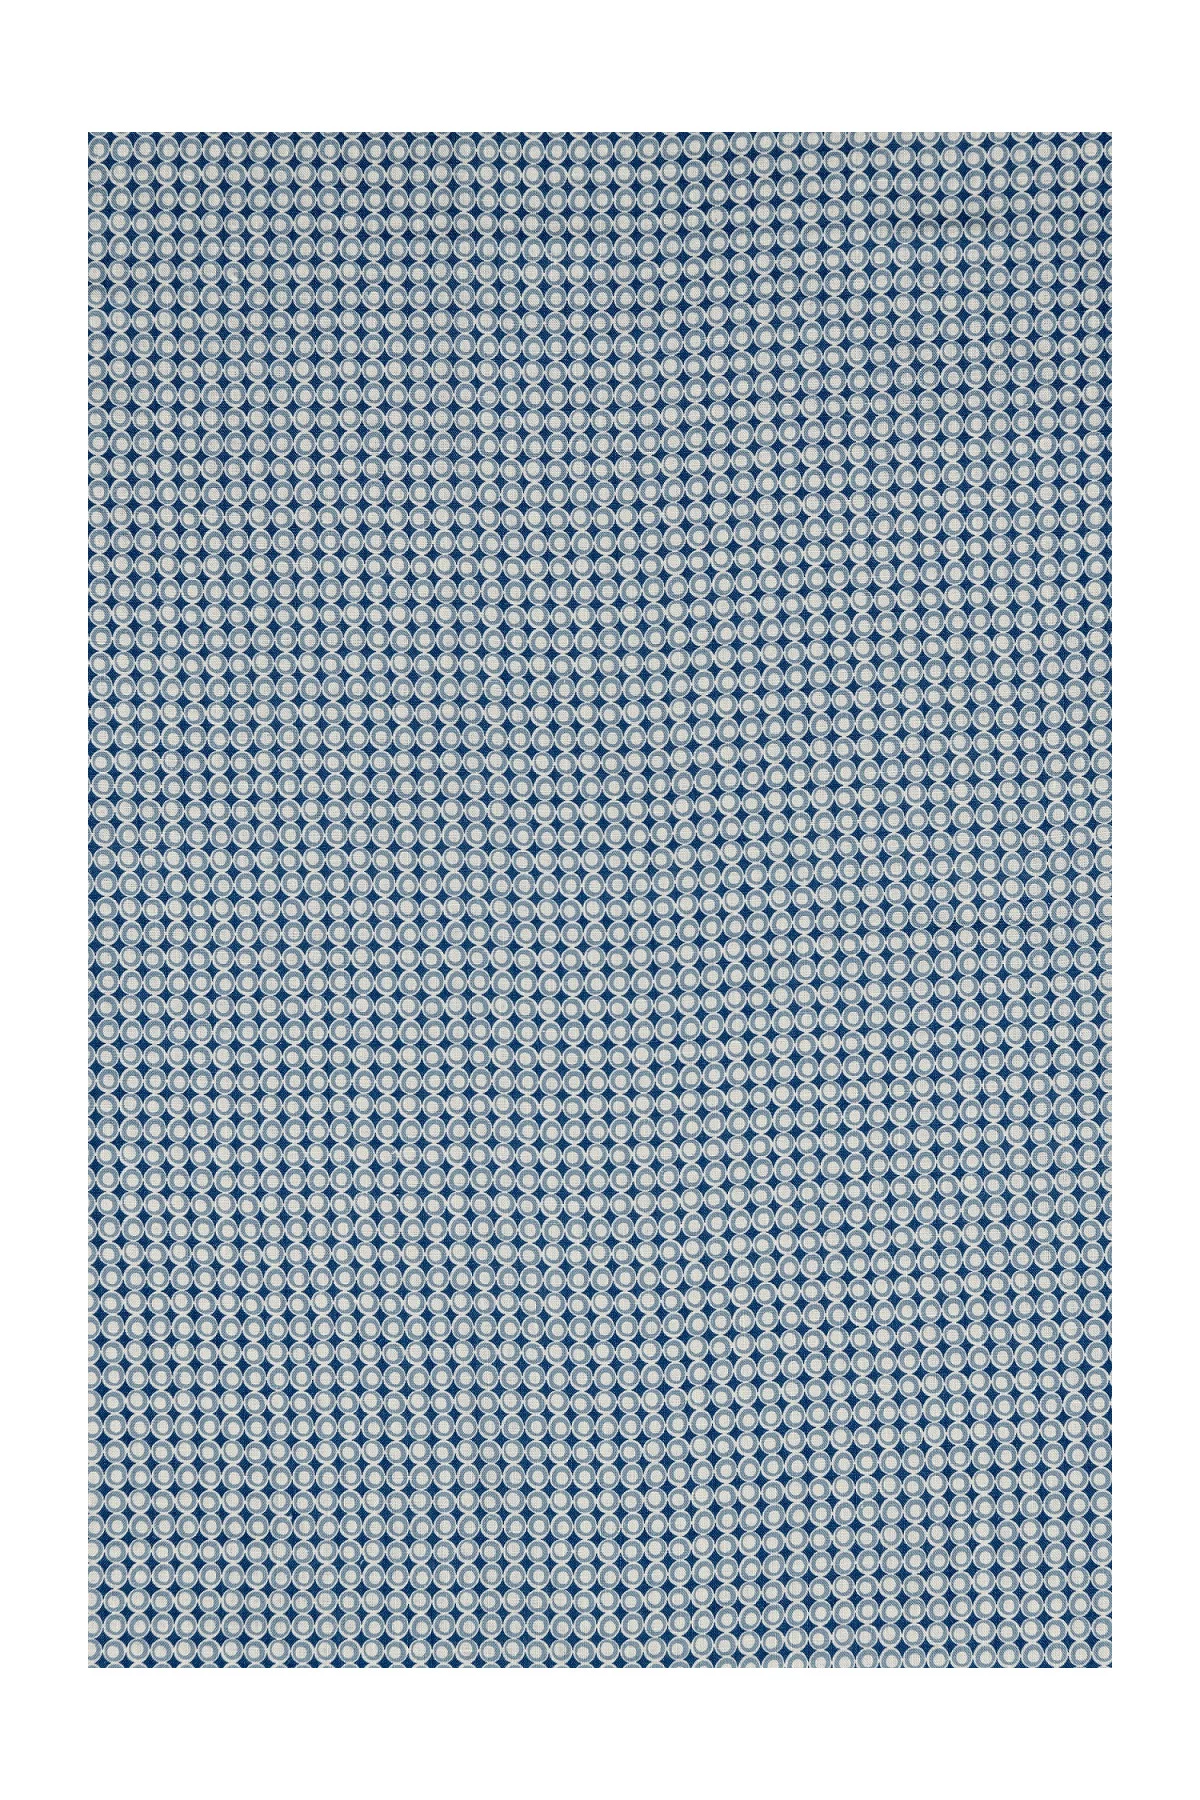 Lin Léger - Imprimé BLUE CHAIN - 3m